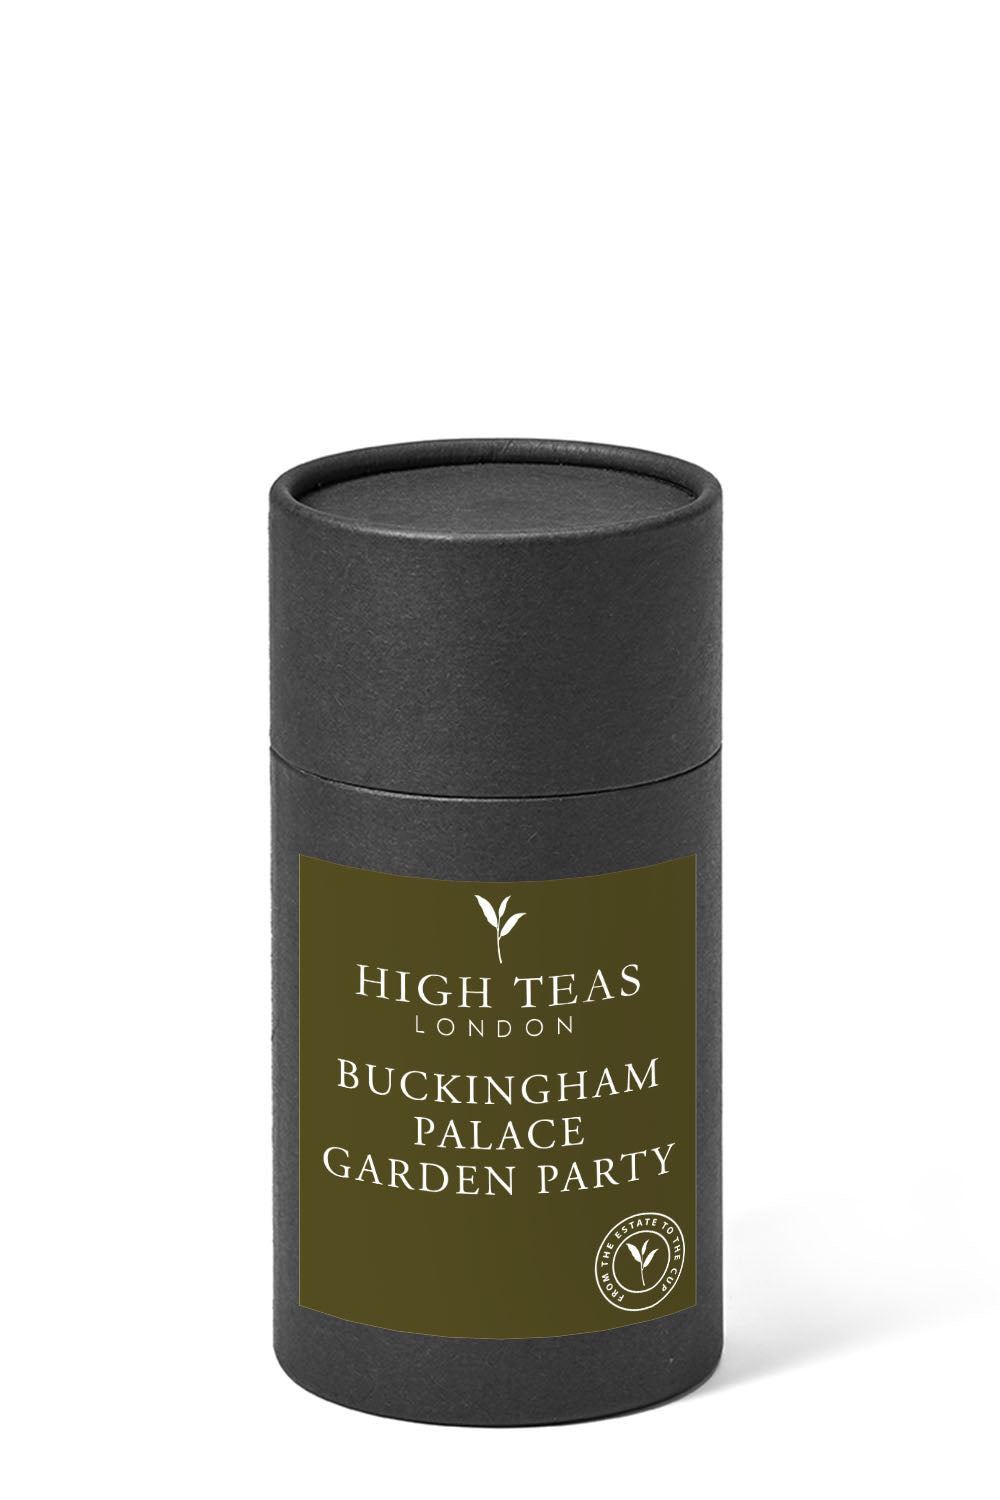 Buckingham Palace Garden Party-60g gift-Loose Leaf Tea-High Teas